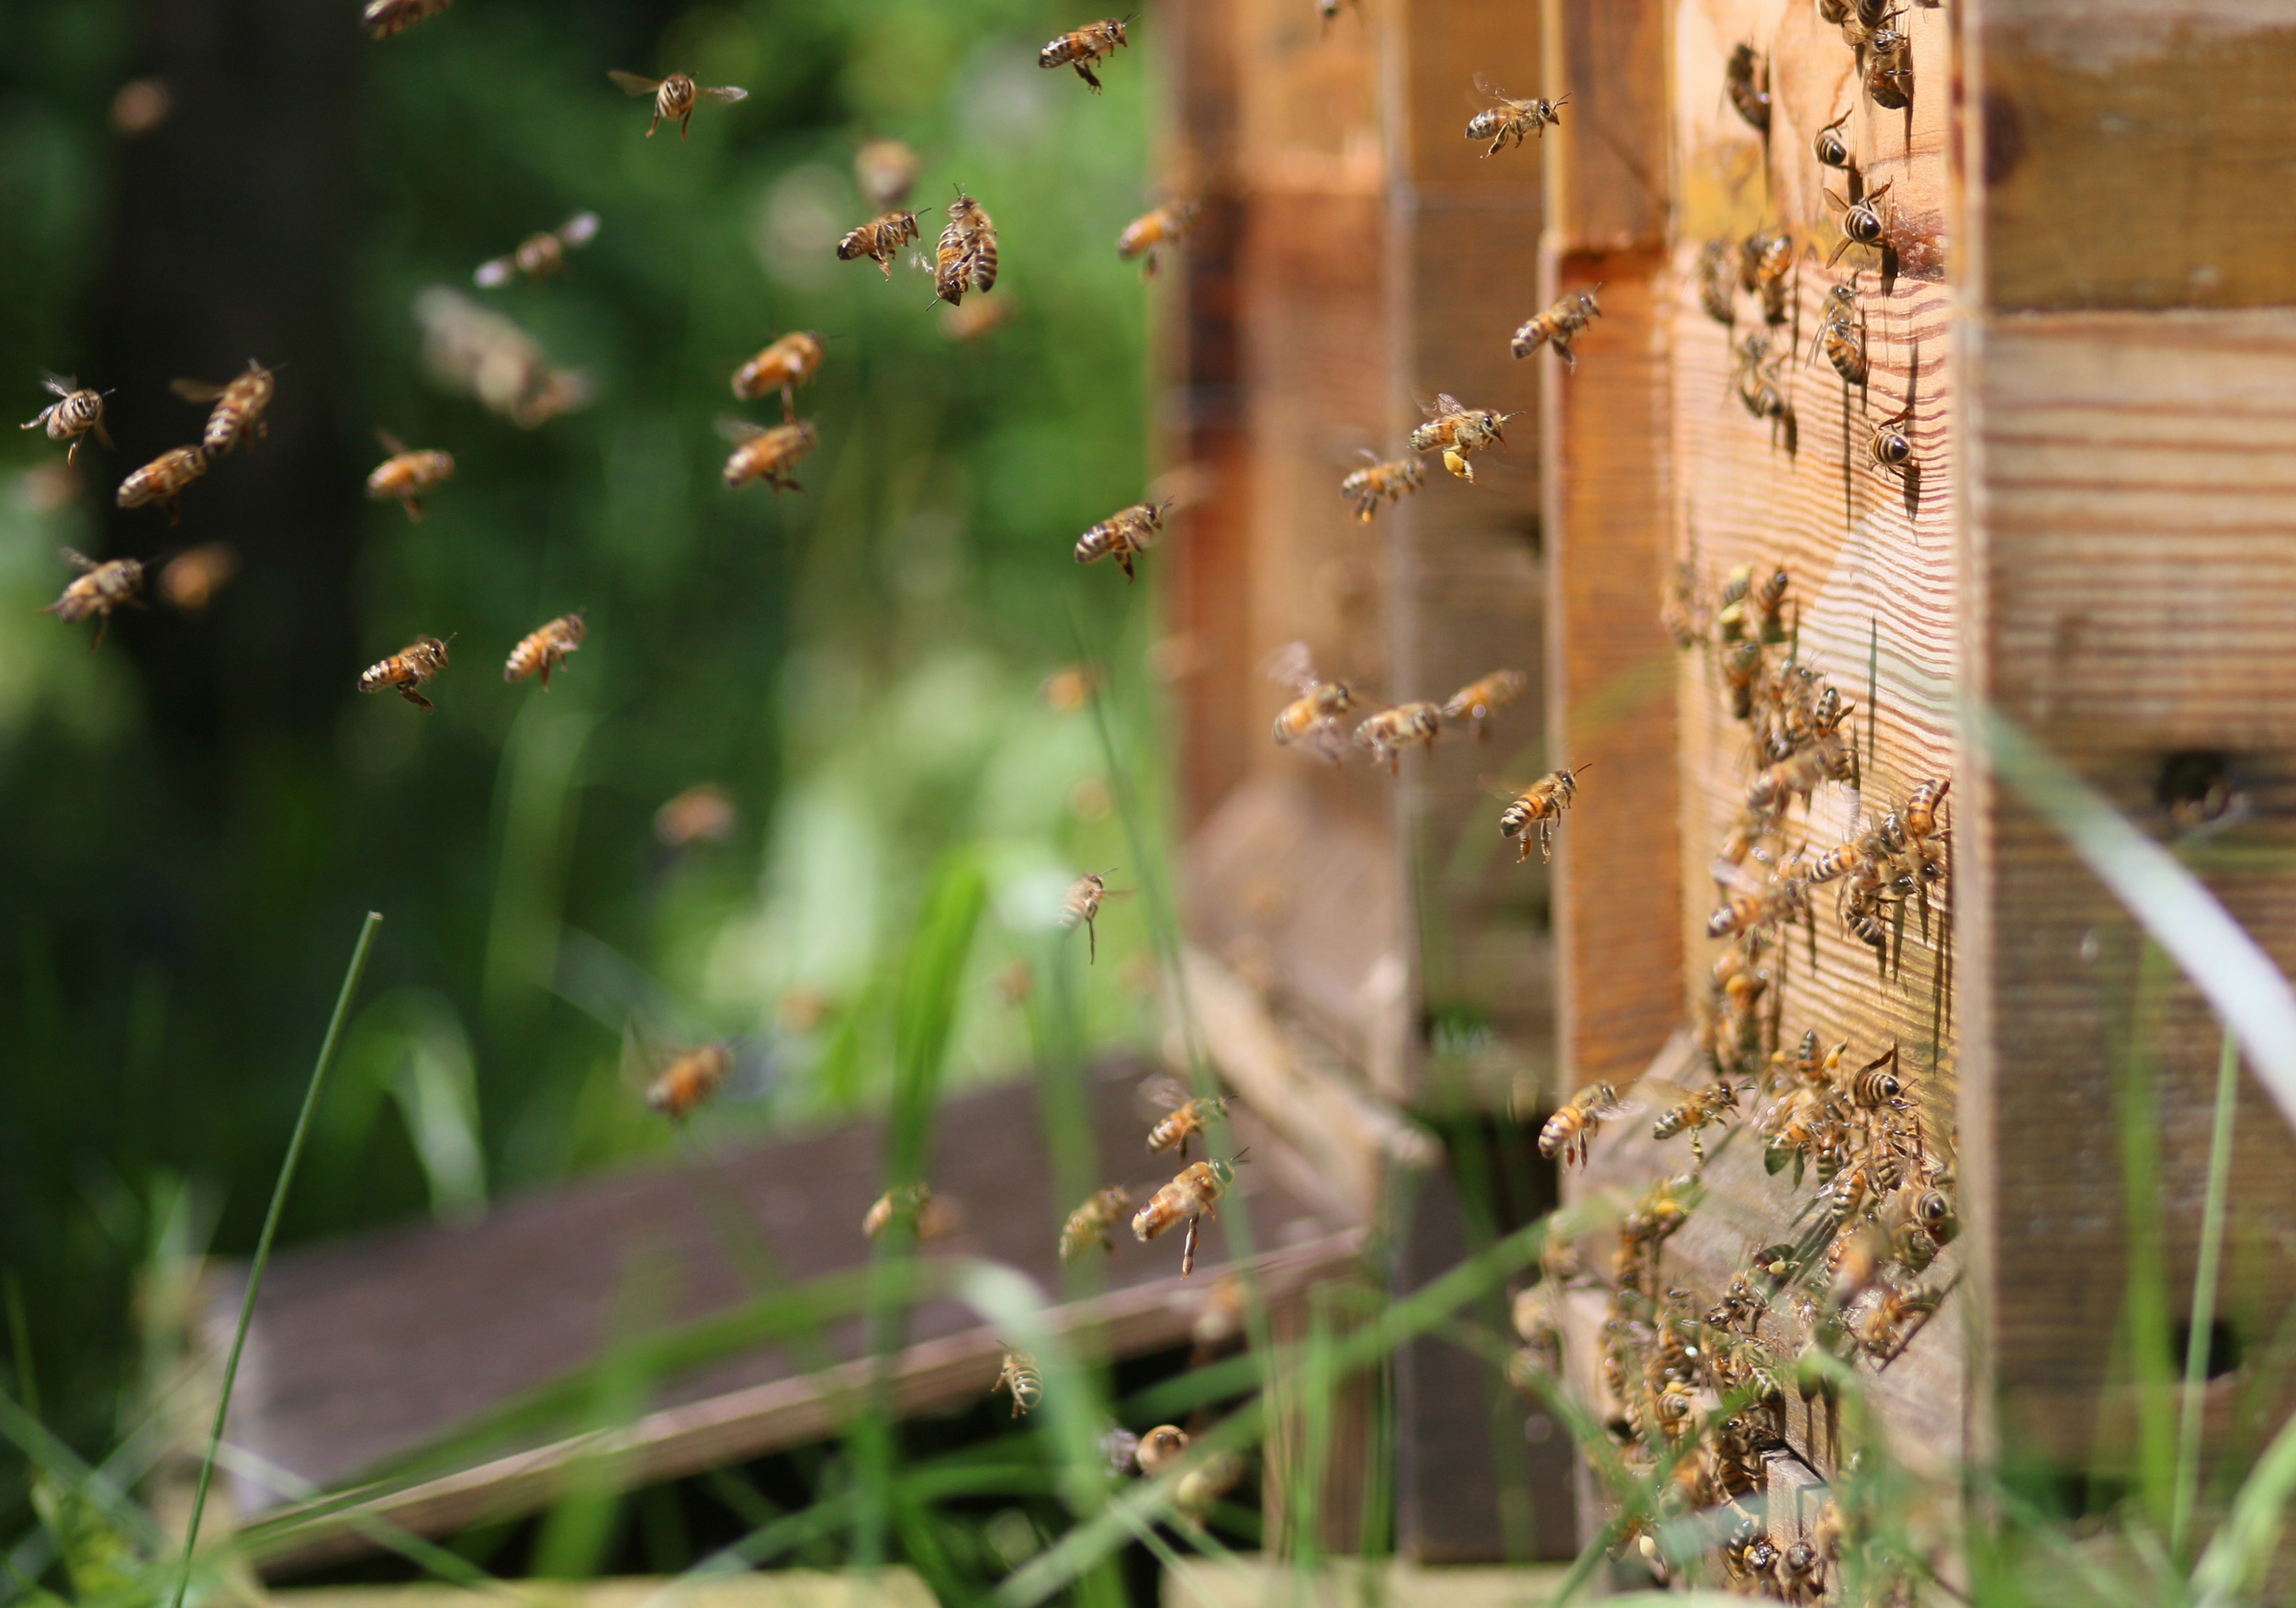 Sammlerinnen im Spätsommer: Jetzt ist ein guter Polleneintrag wichtig, damit die Winterbienen gut genährt werden und bis zum Frühling leben. Foto: Janine Fritsch